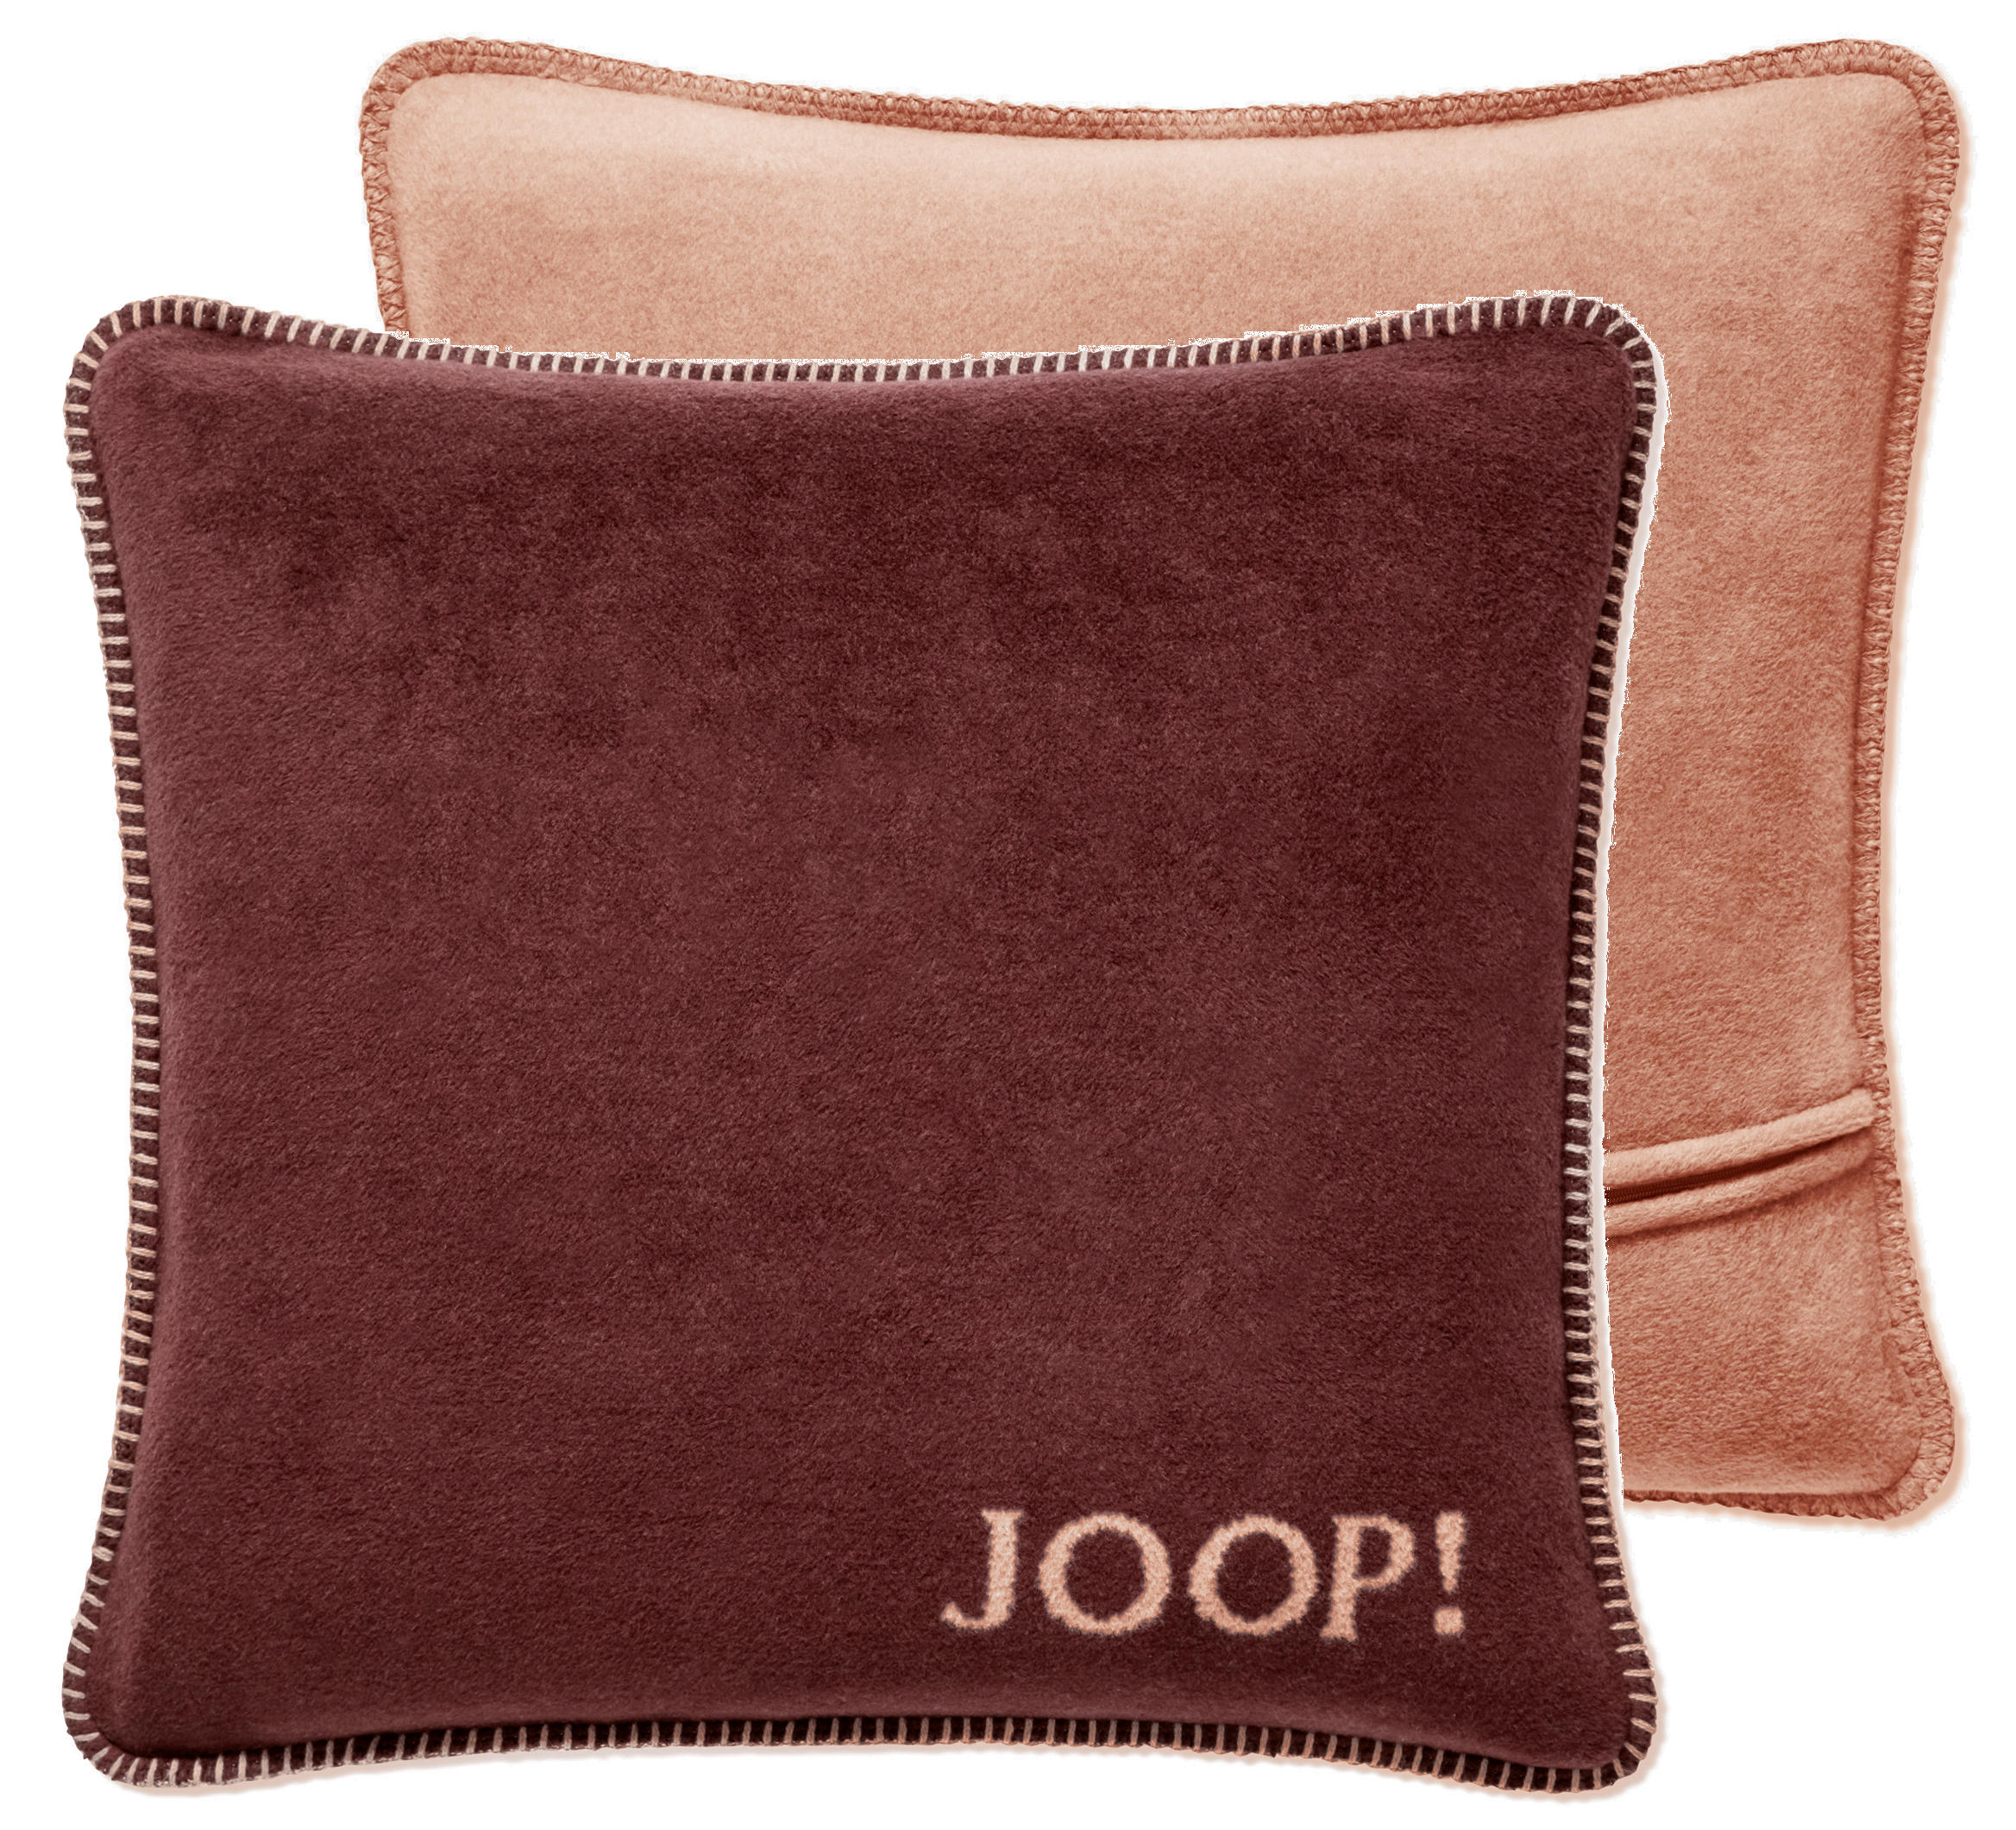 KISSENHÜLLE Uni Doubleface 50/50 cm  - Bordeaux/Orange, Design, Textil (50/50cm) - Joop!